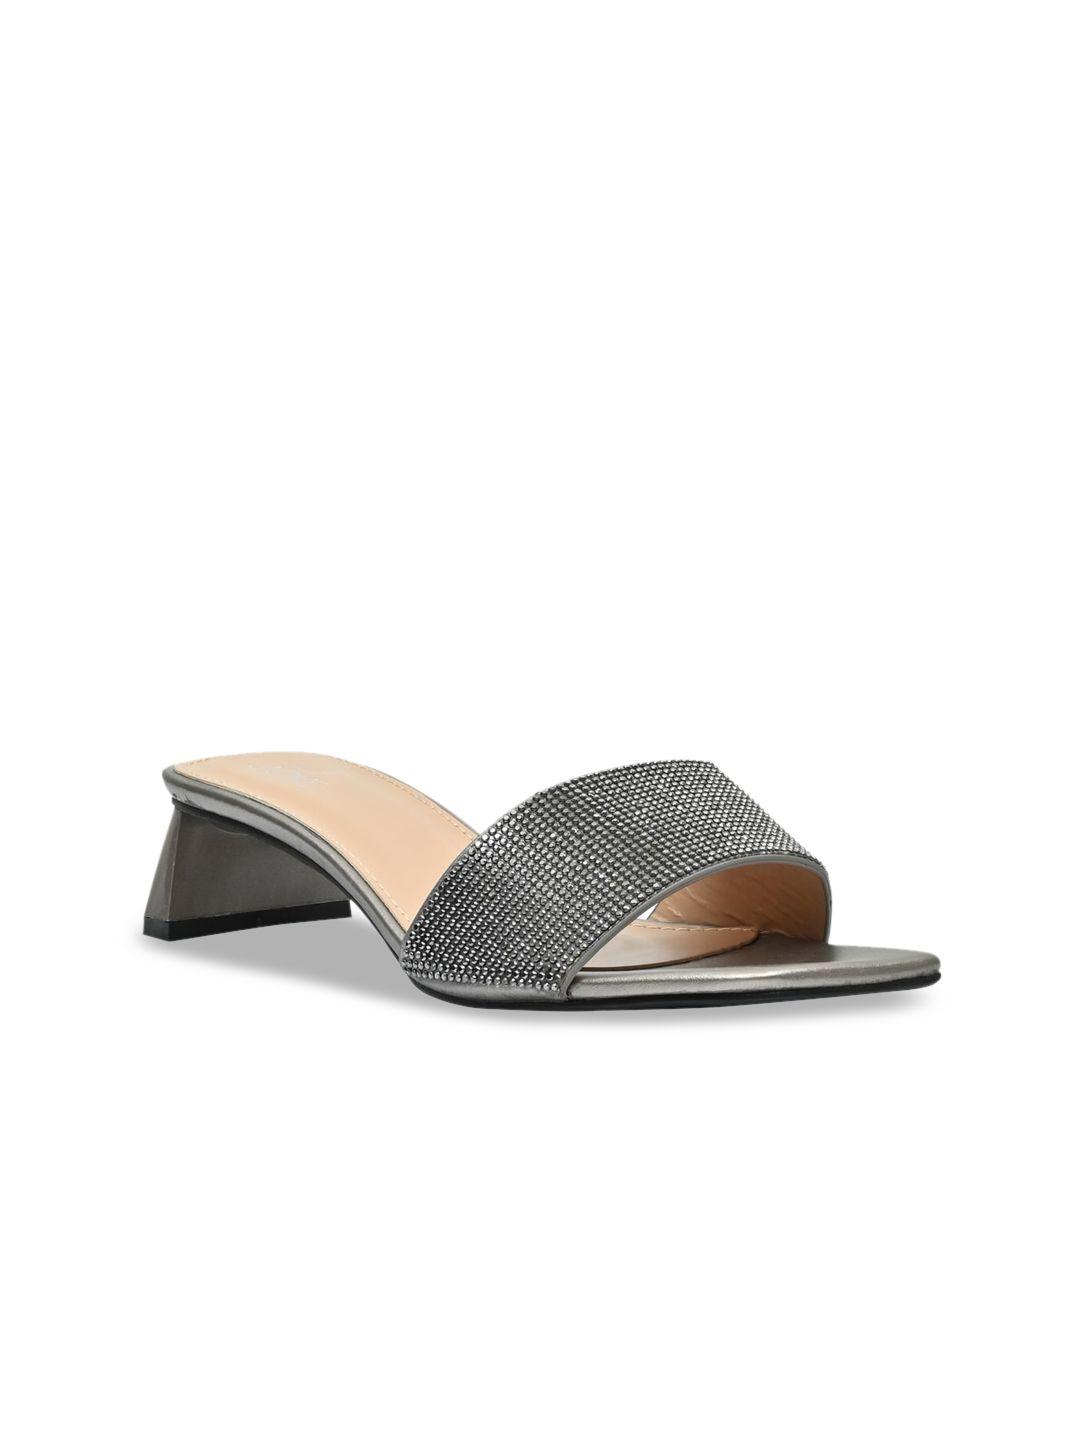 jove metallic textured block heel mules